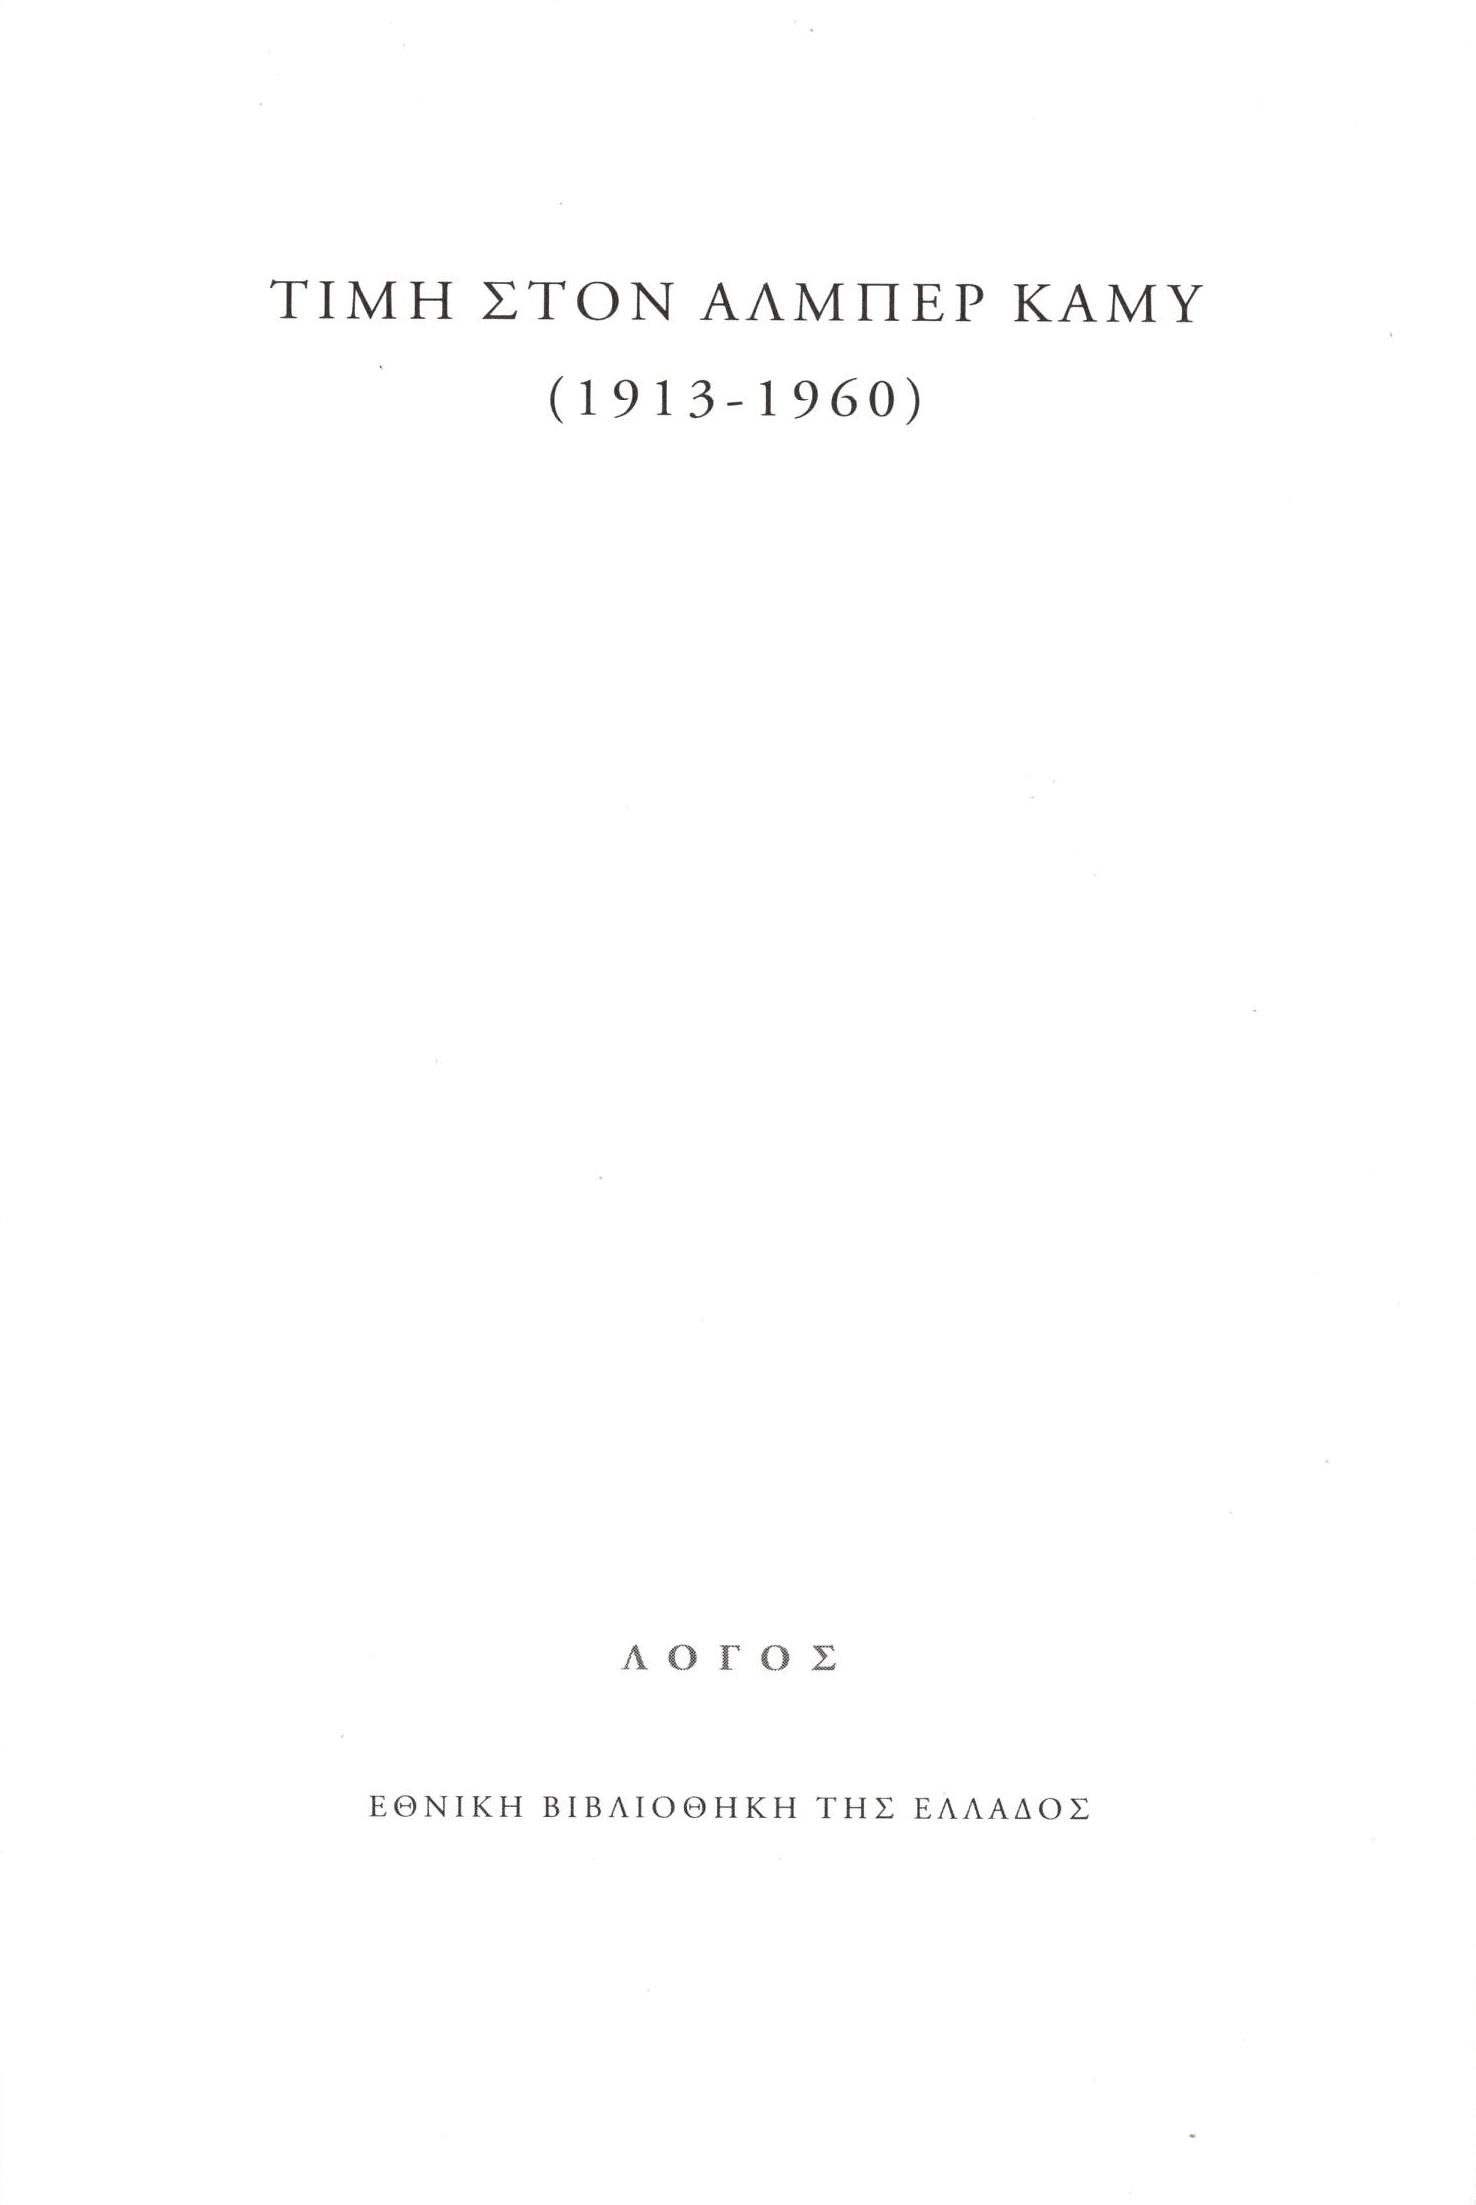 Τιμή στον Αλμπέρ Καμύ (1913-1960), , Στεφανοπούλου, Μαρία, Εθνική Βιβλιοθήκη της Ελλάδος, 2022